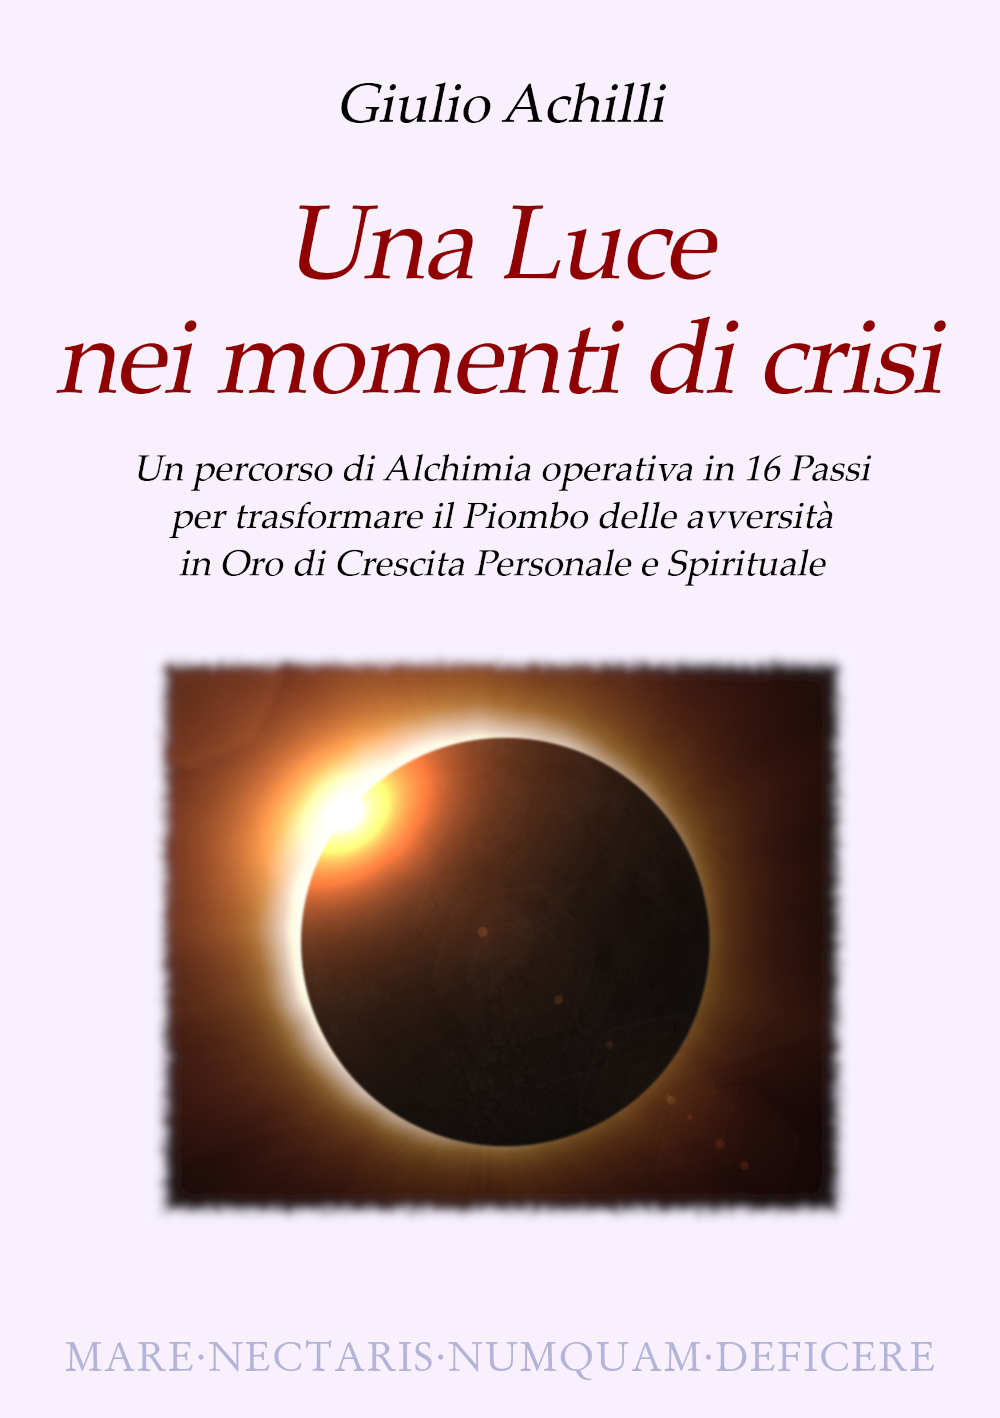 Una Luce nei momenti di crisi ~ un libro di Giulio Achilli title=